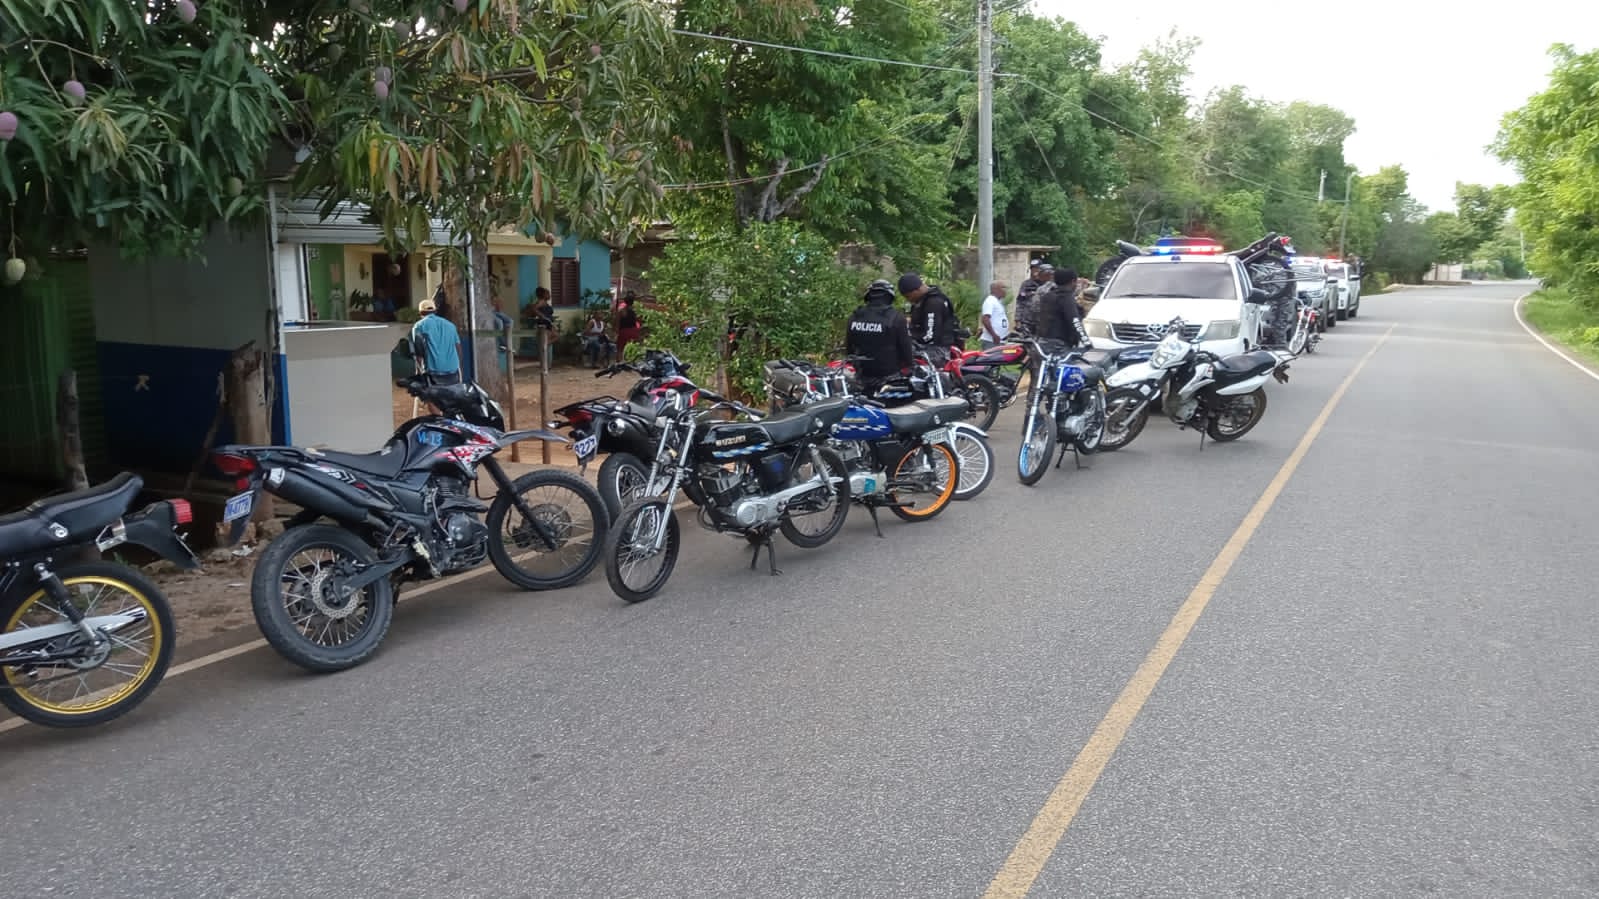 Policía desmantela banda organizadora de carreras clandestinas de motocicletas en San Cristóbal